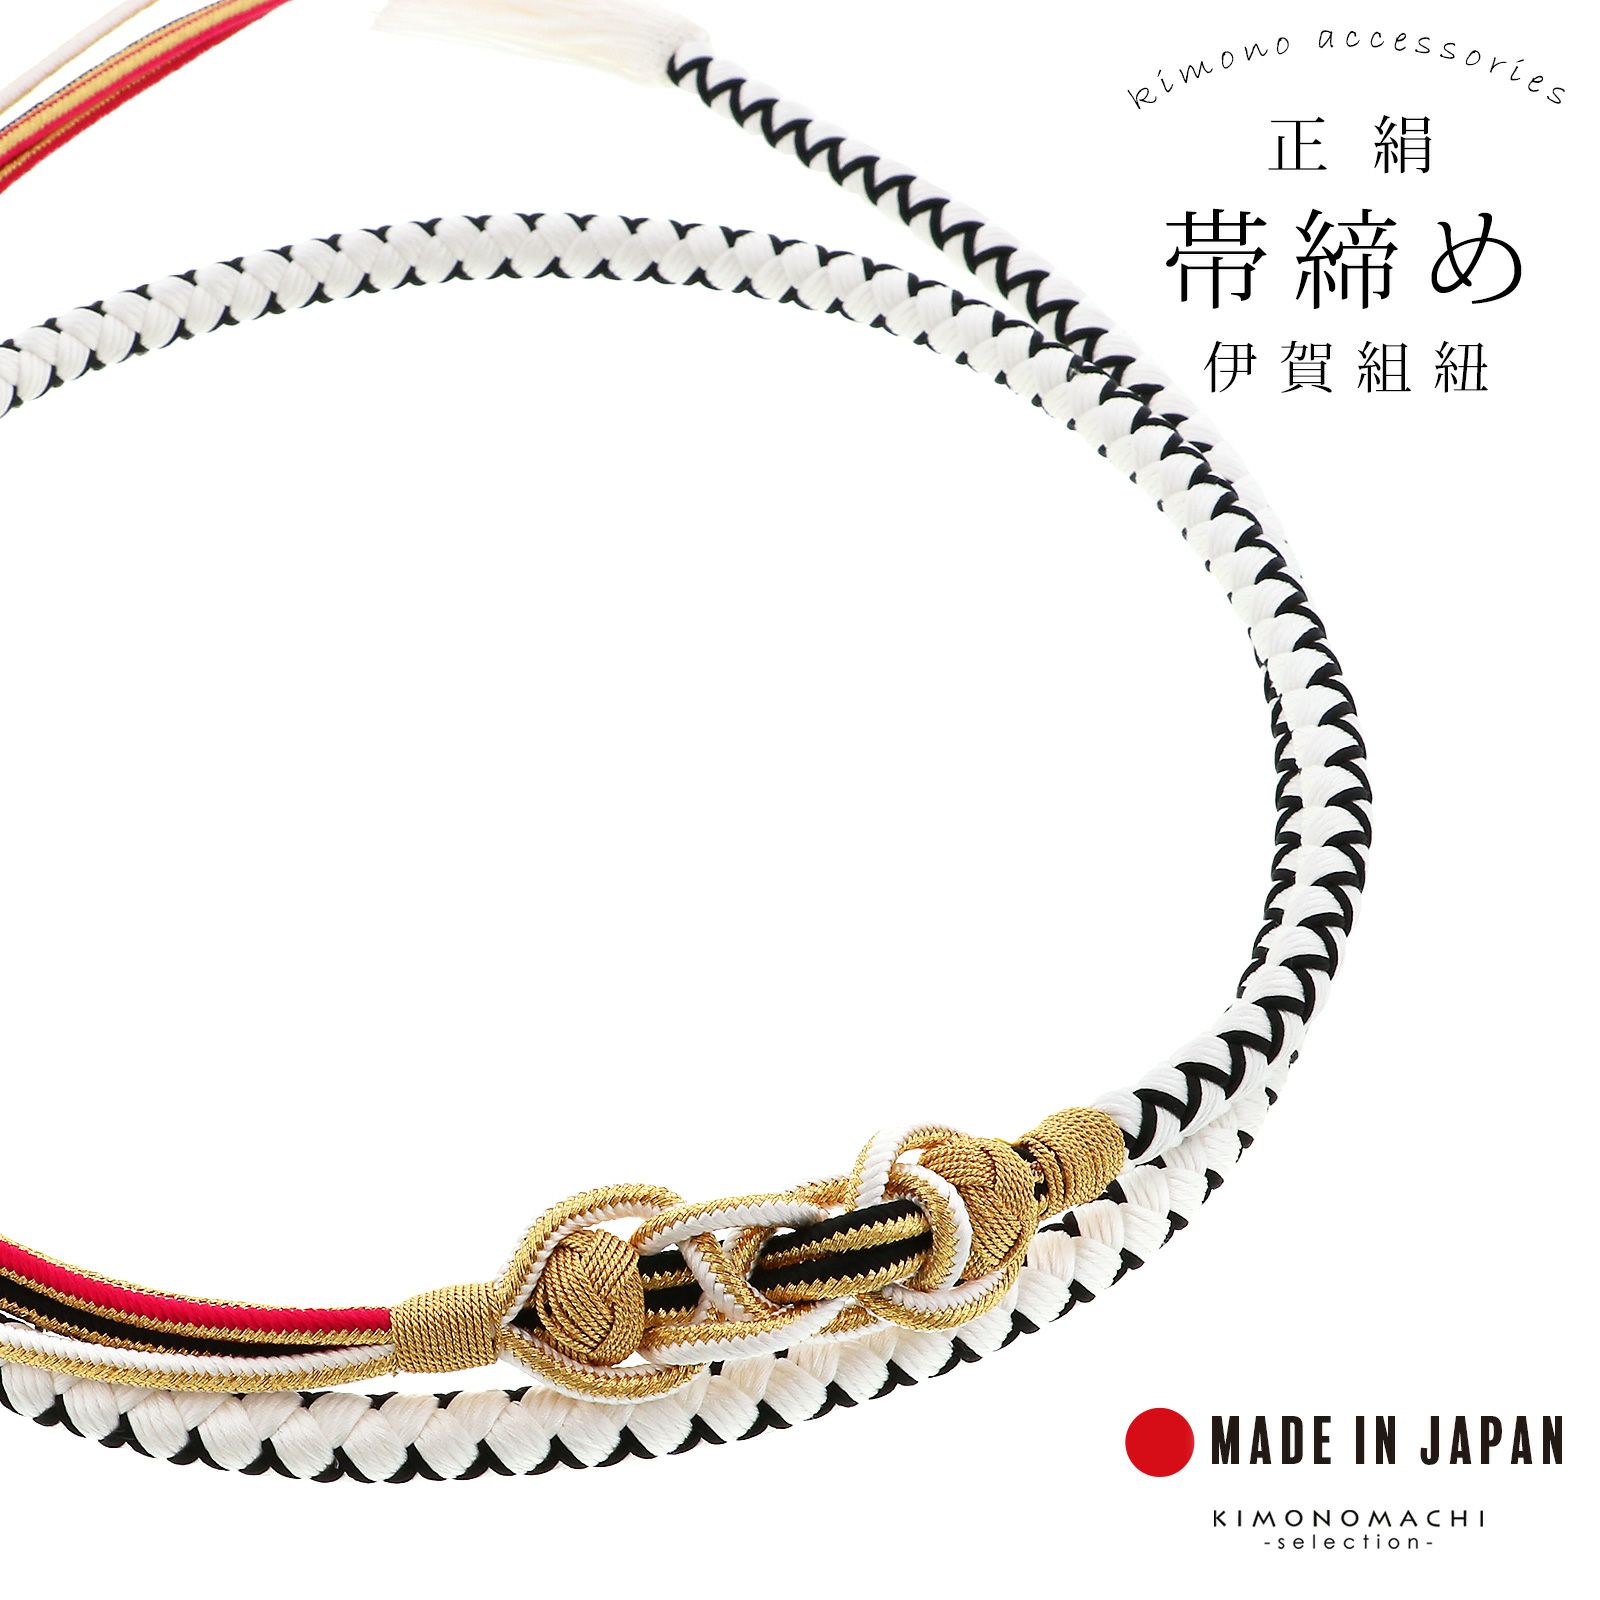 帯締め 伊賀組紐 振袖用 正絹 「白×黒」 日本製 伝統的工芸品